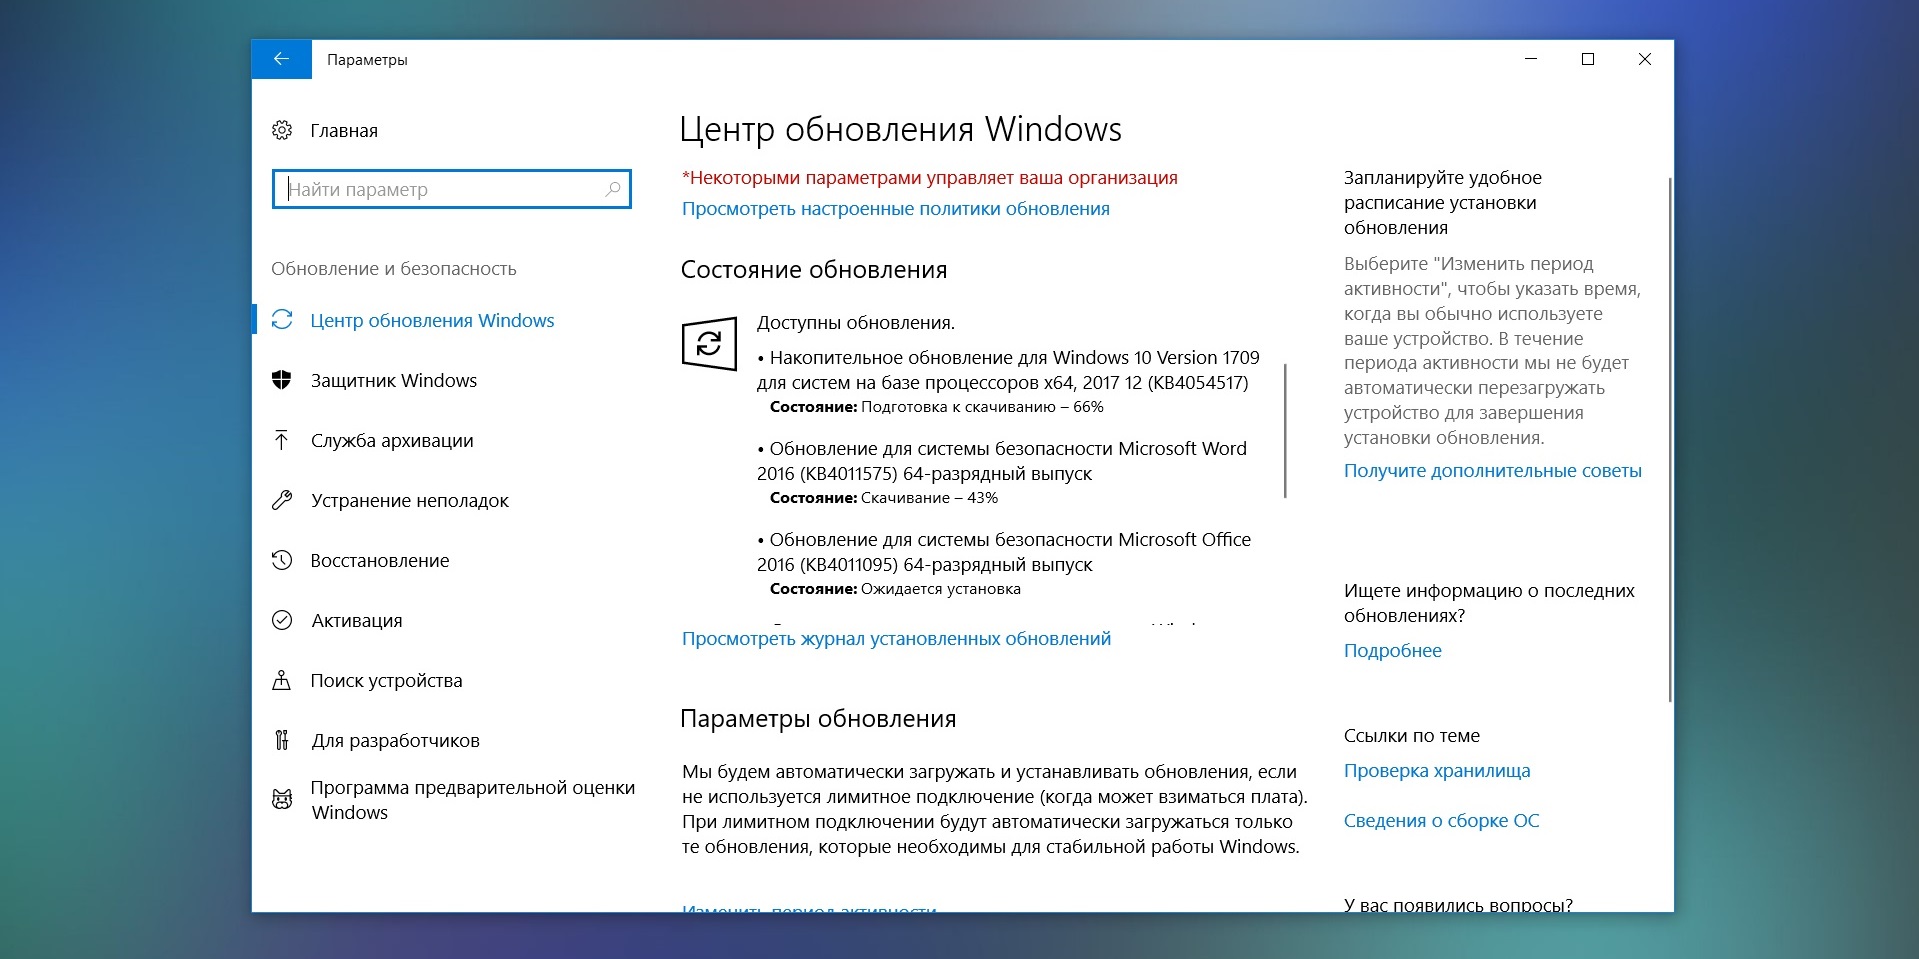 Доступно обновление Windows 10 сборка 16299.125